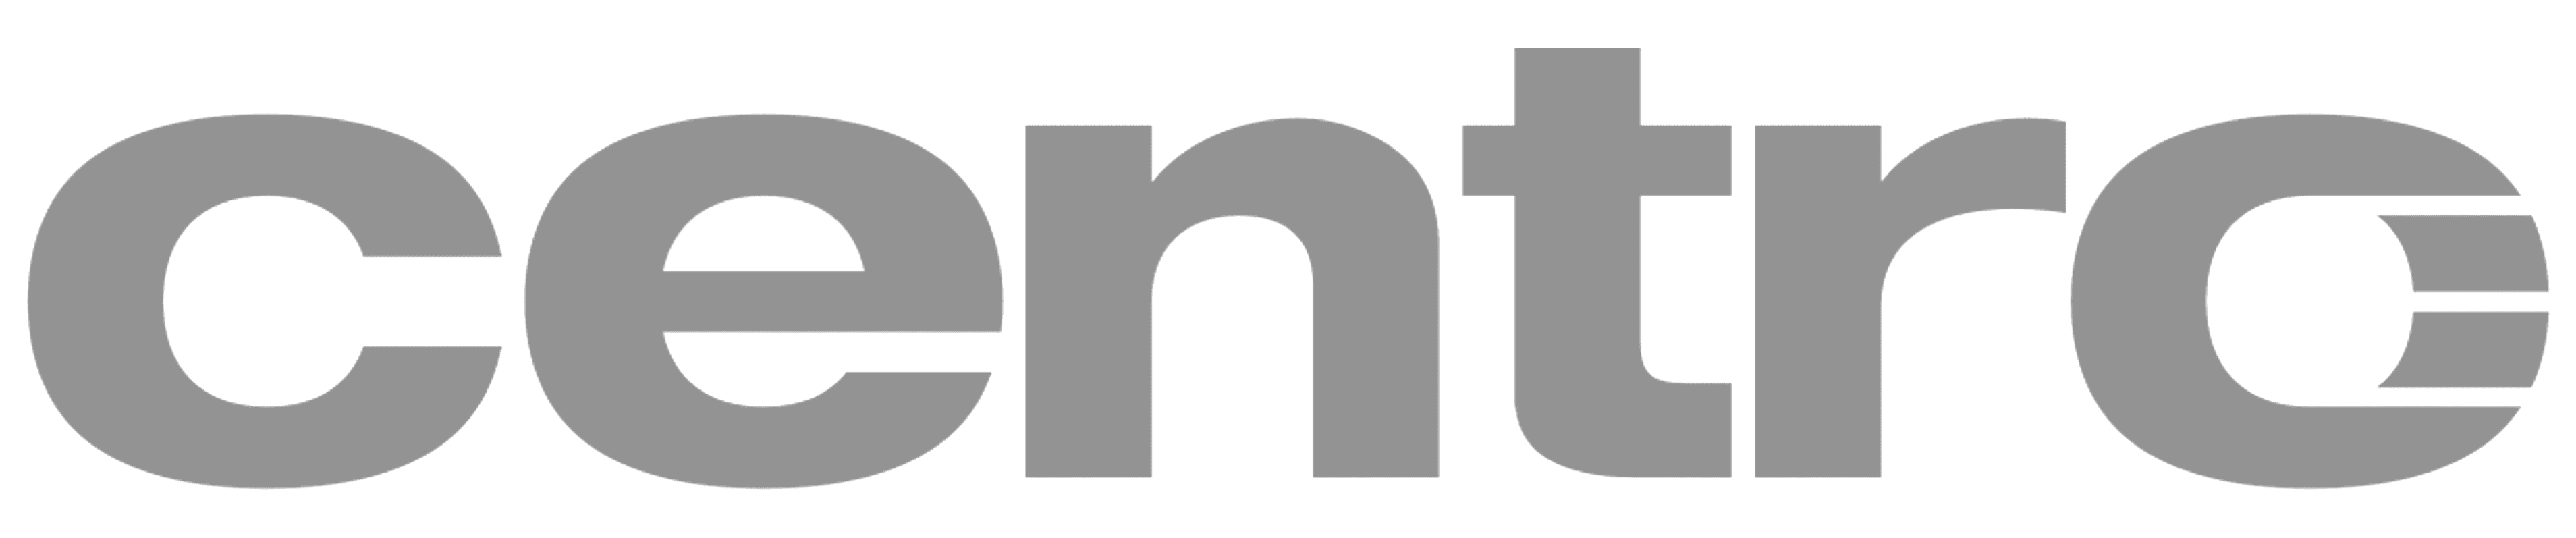 Centro-logo-1